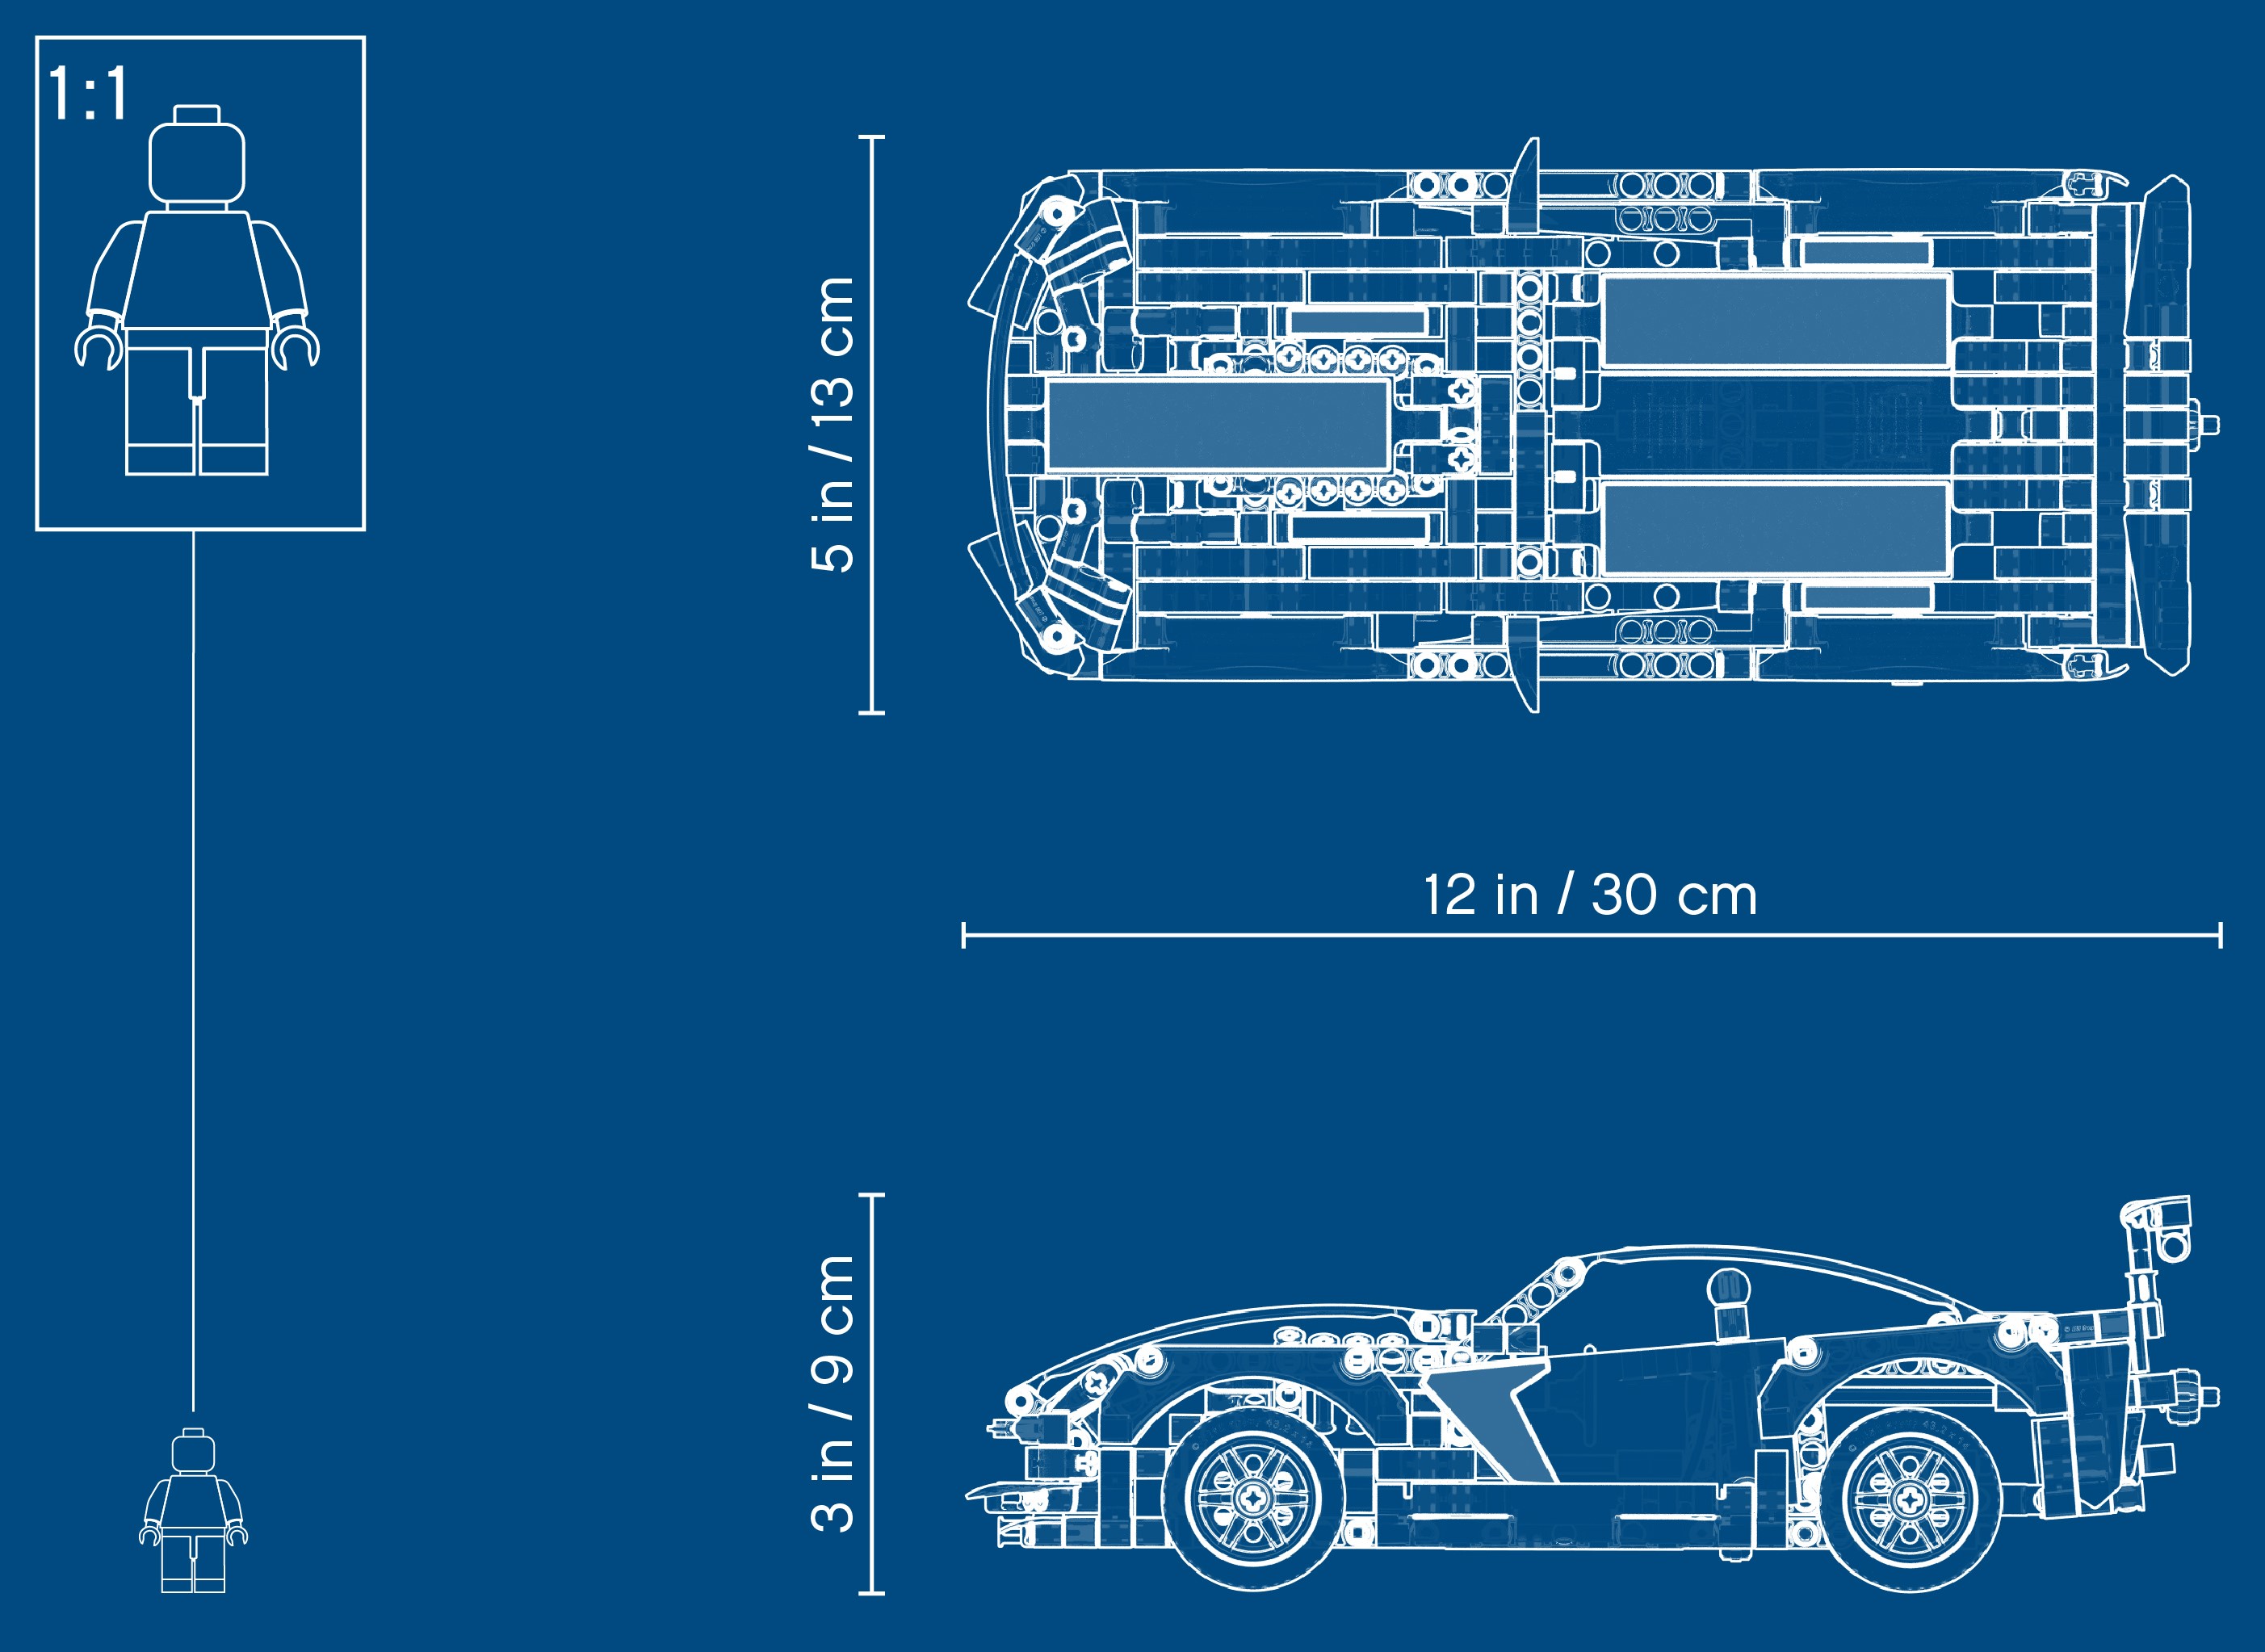 LEGO Technic Chevrolet Corvette ZR1 Supercar 42093 Bauset, Neu 2019 (579  Teile) : : Jeux et Jouets